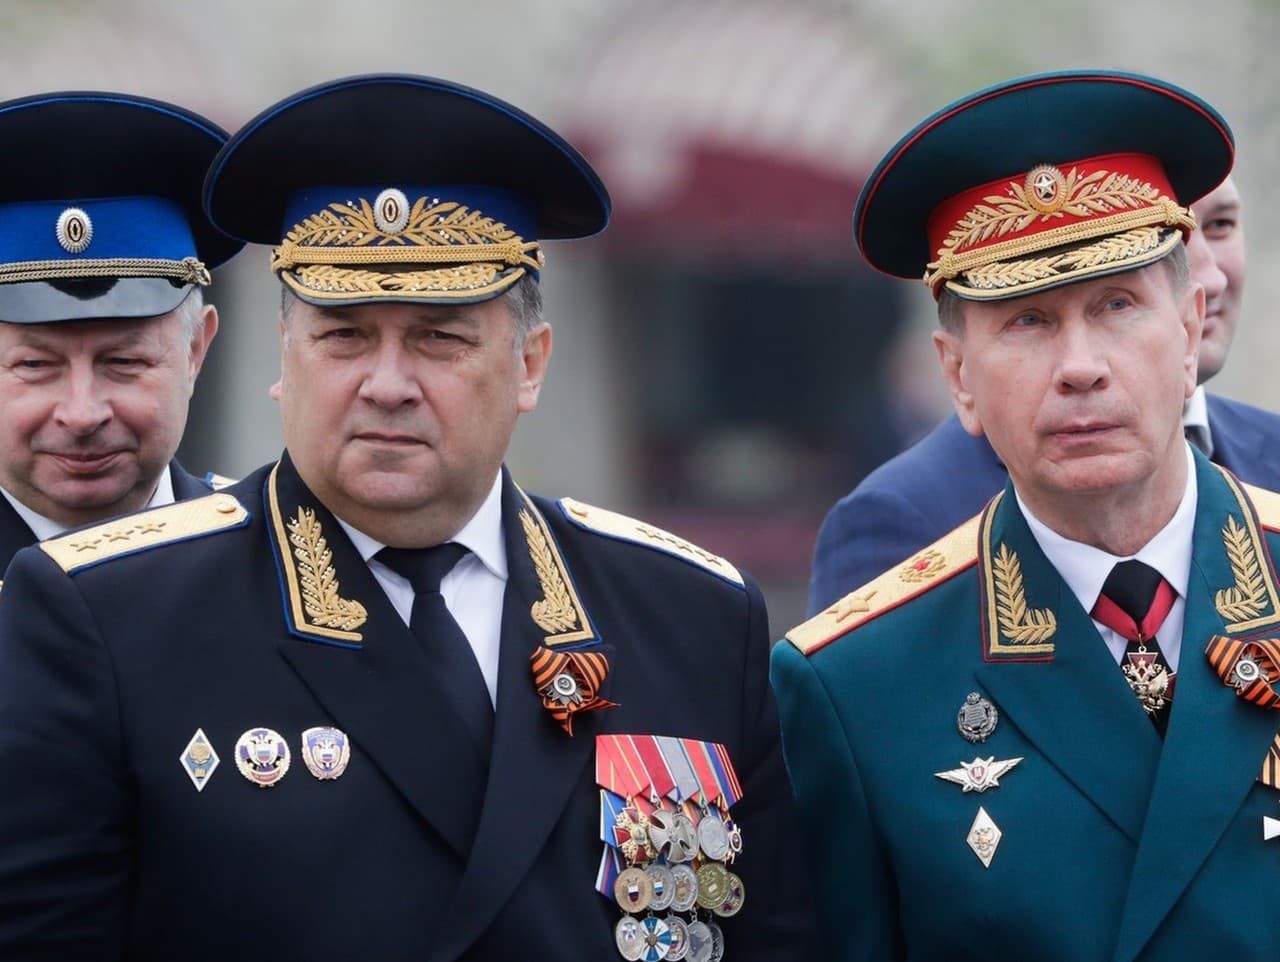 Zástupca šéfa ruského väzenského úradu FSIN Valerij Bojarinev (vľavo) bol povýšený na generálplukovníka ministerstva vnútra.